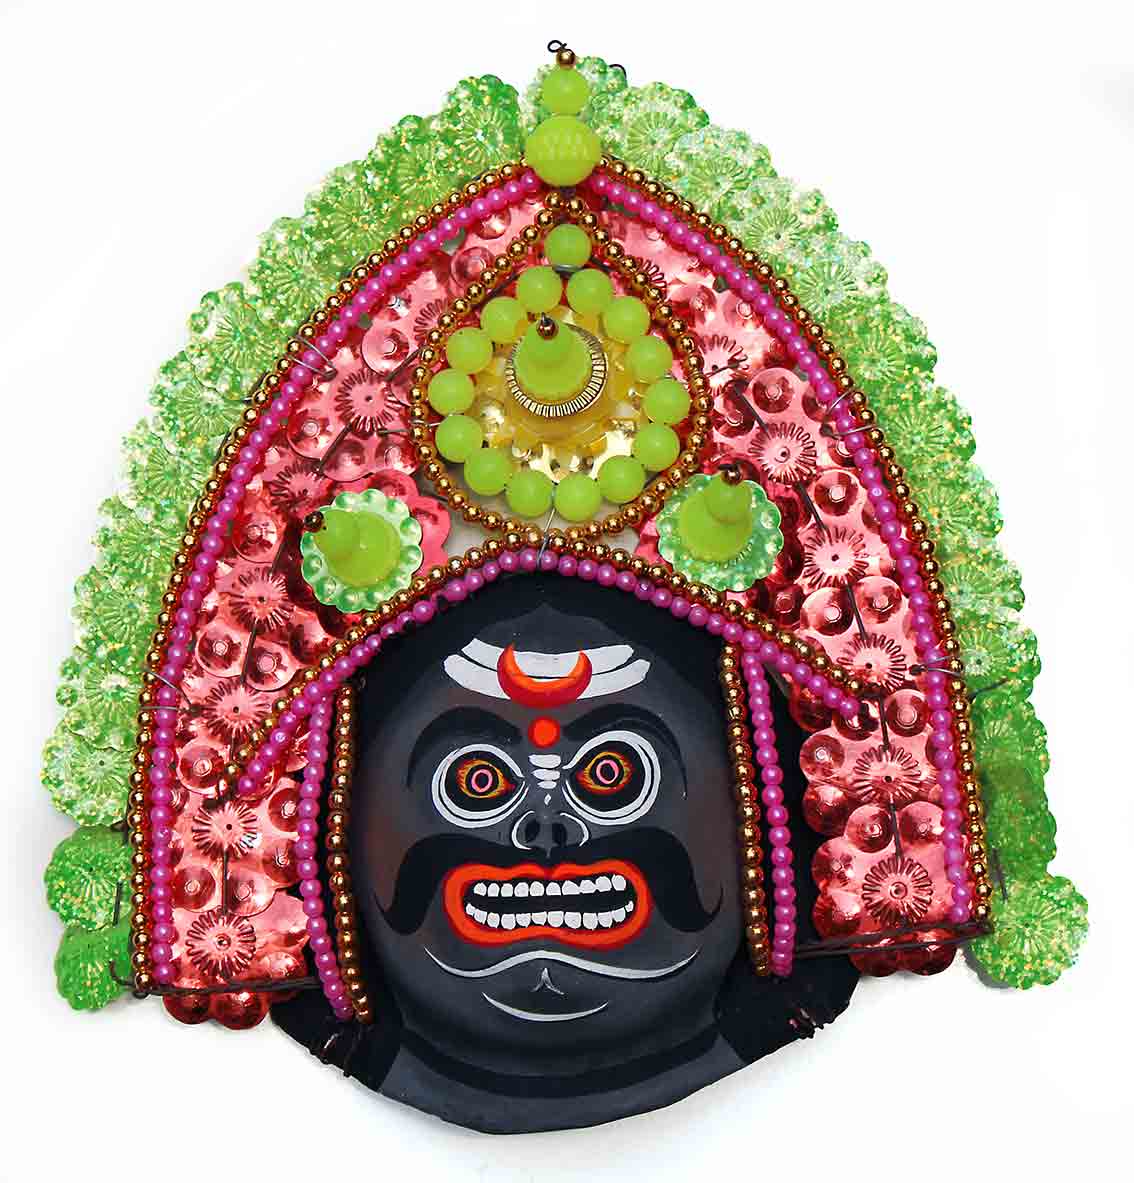 Chauu mask (Mahishasura)